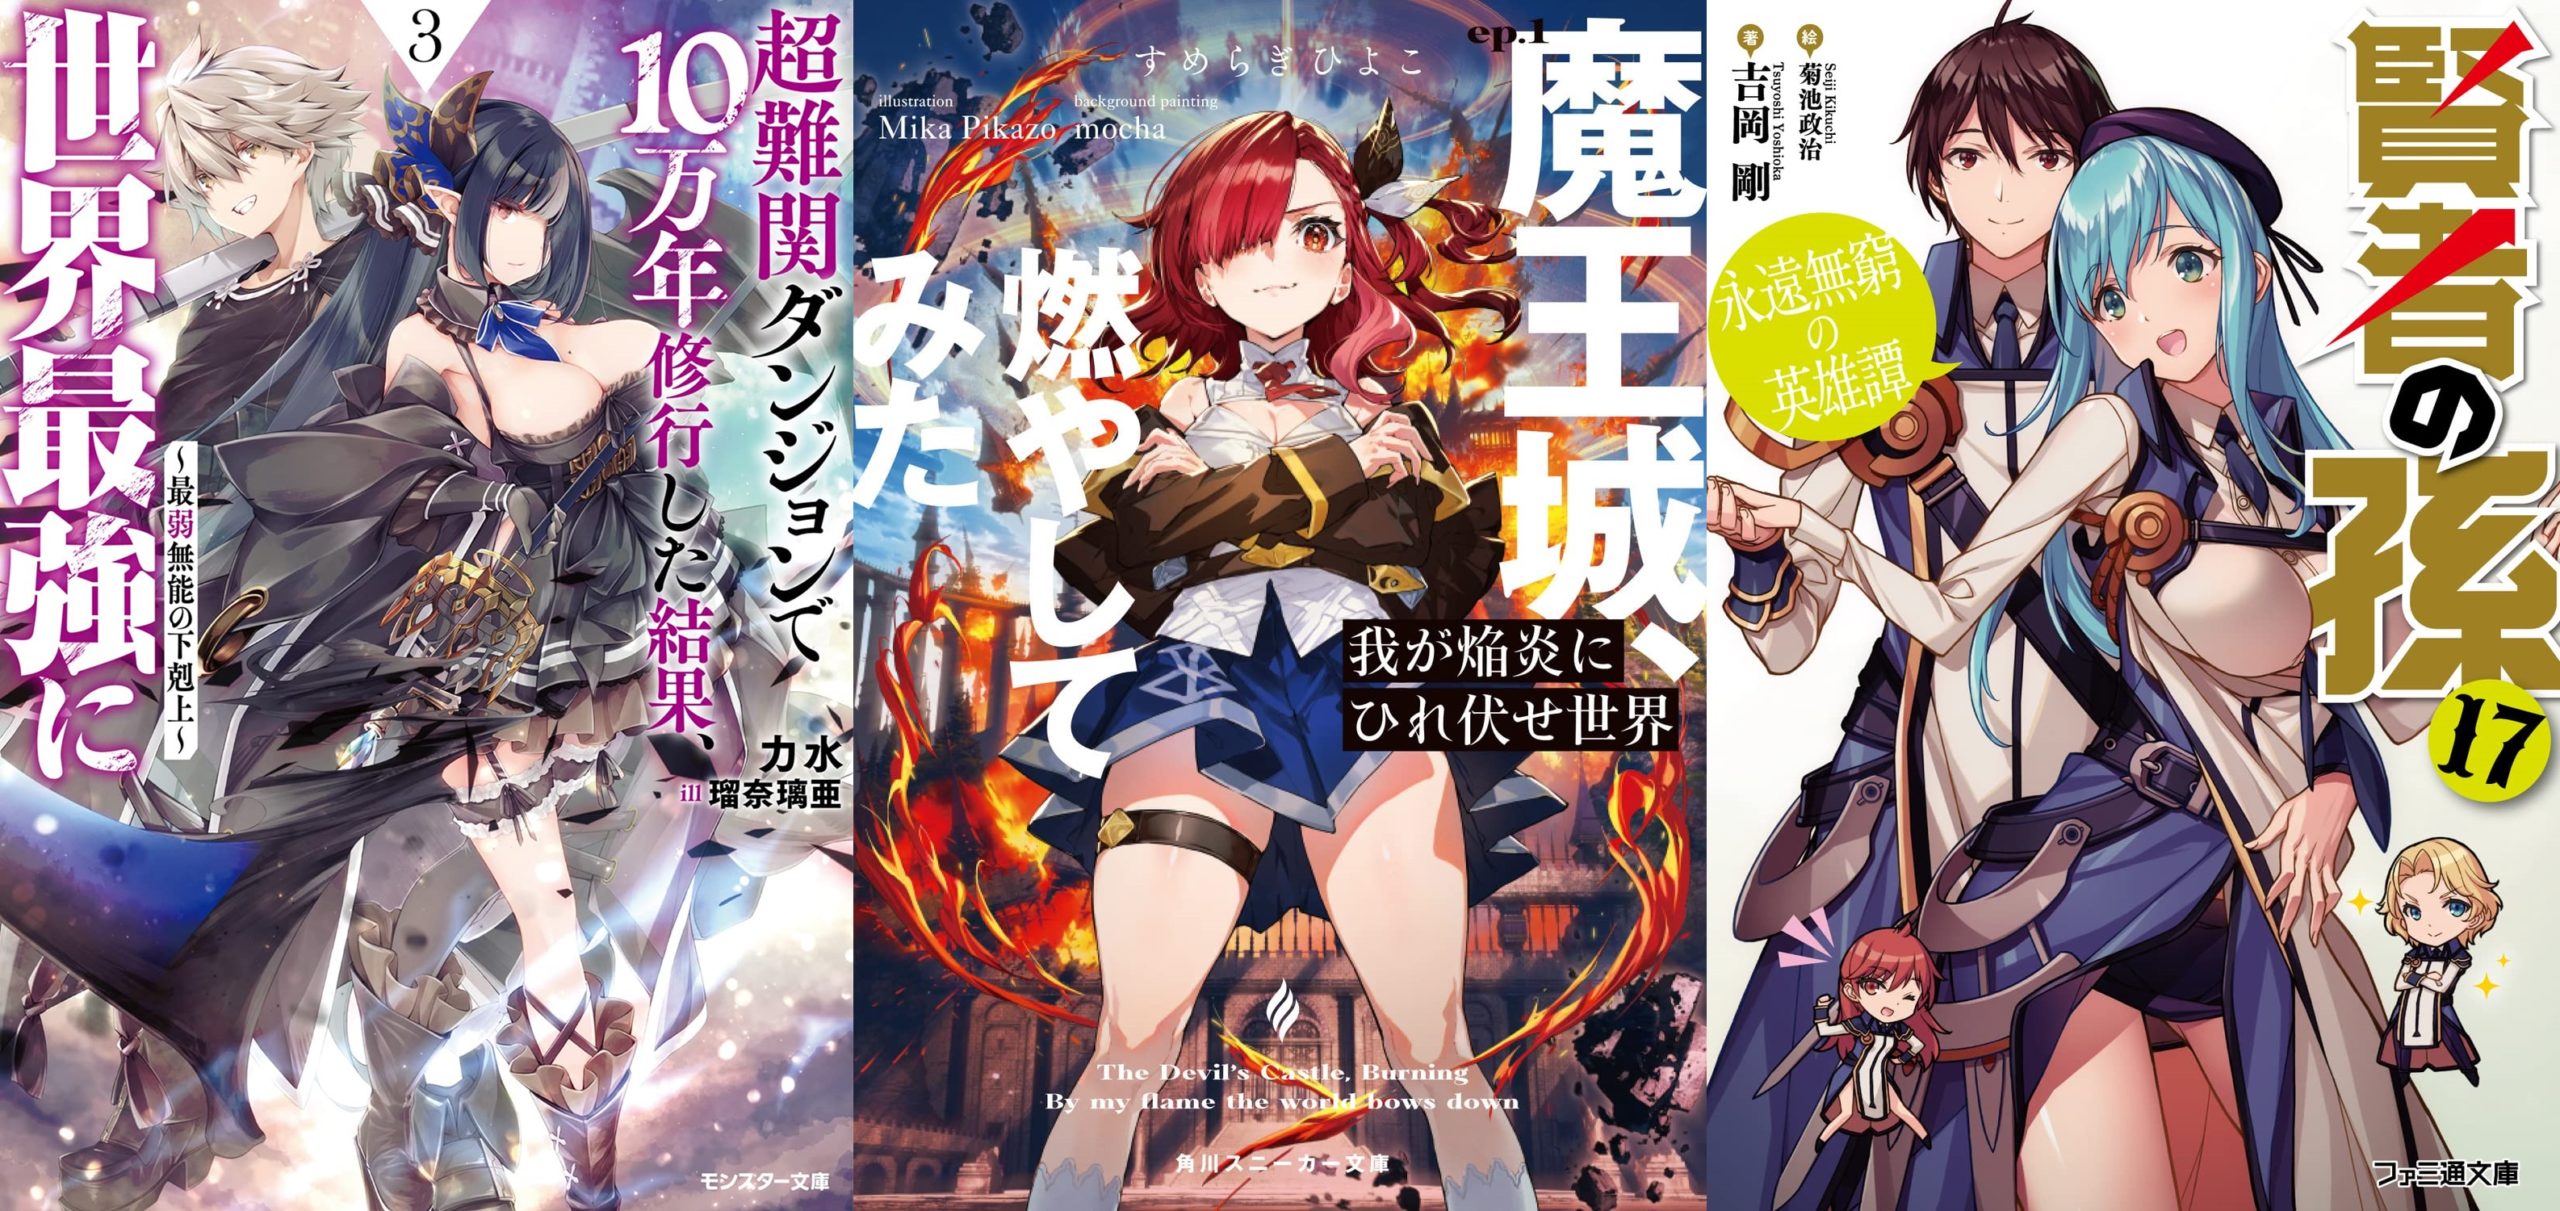 IntoxiAnime - Página 224 de 980 - Tudo sobre animes, tops, light novels,  mangas, notícias, rankings e vendas.